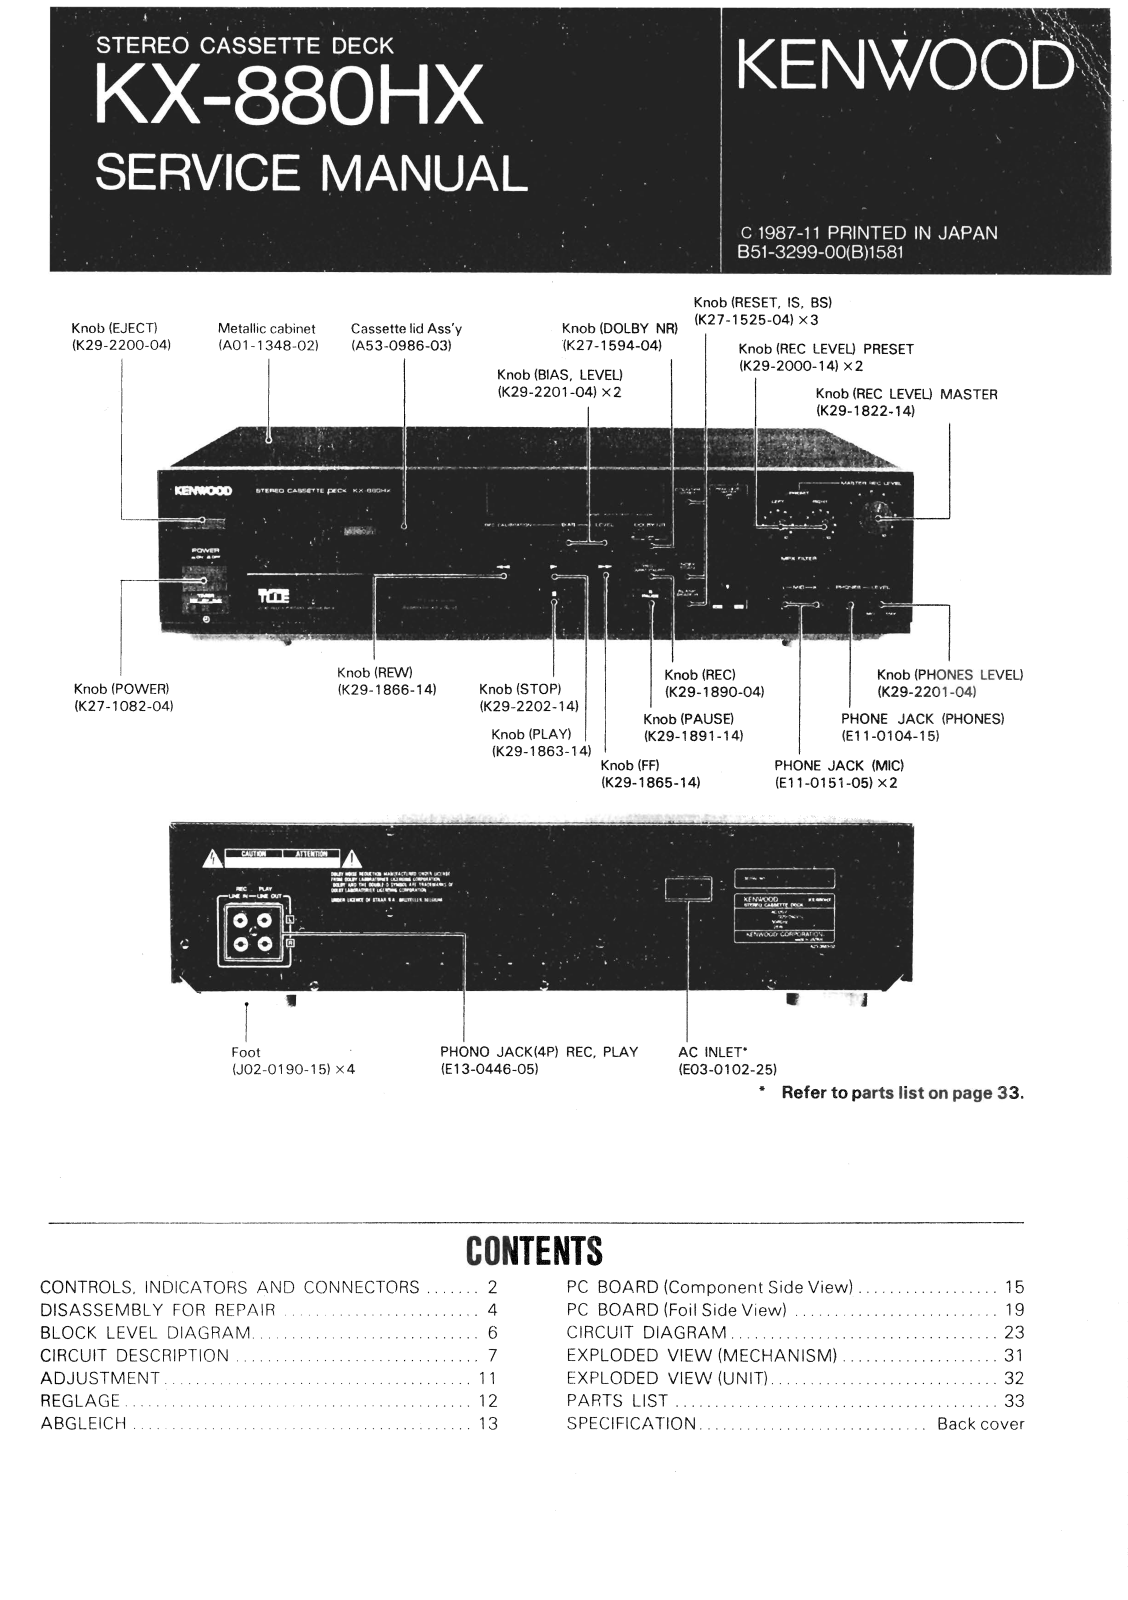 Kenwood KX-880-HX Service Manual